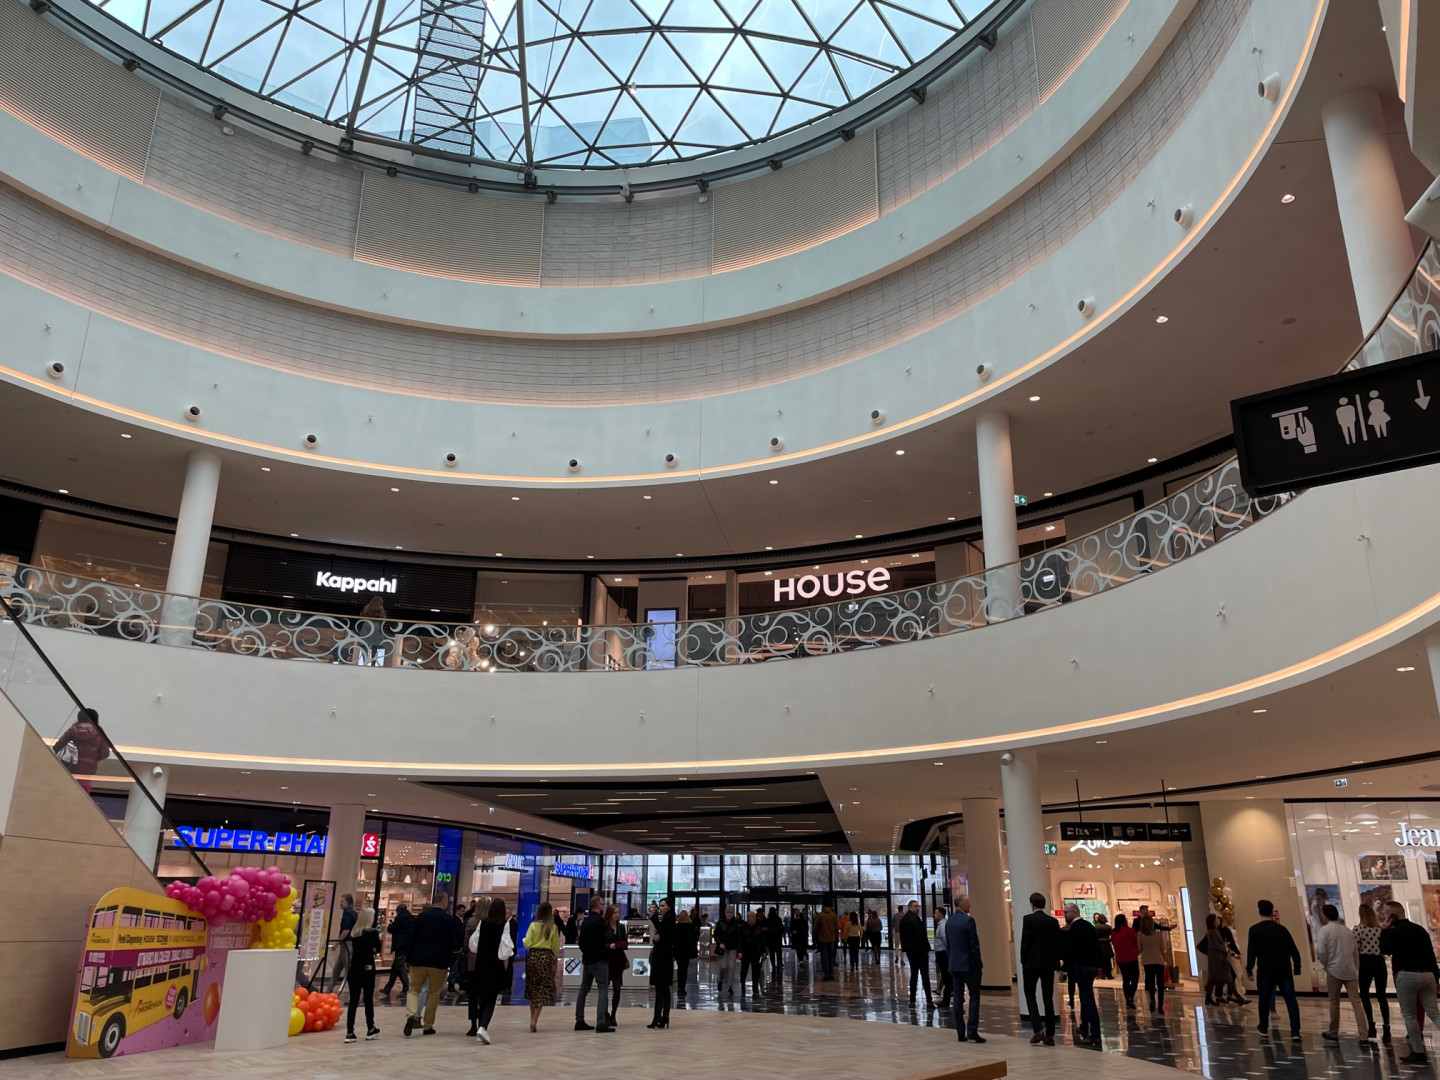 Zakończyła się przebudowa centrum handlowego Promenada w Warszawie. Na klientów czeka 50 nowych sklepów, w tym Peek & Cloppenburg, Marc O'Polo, Tezenis, Benetton czy Homla.